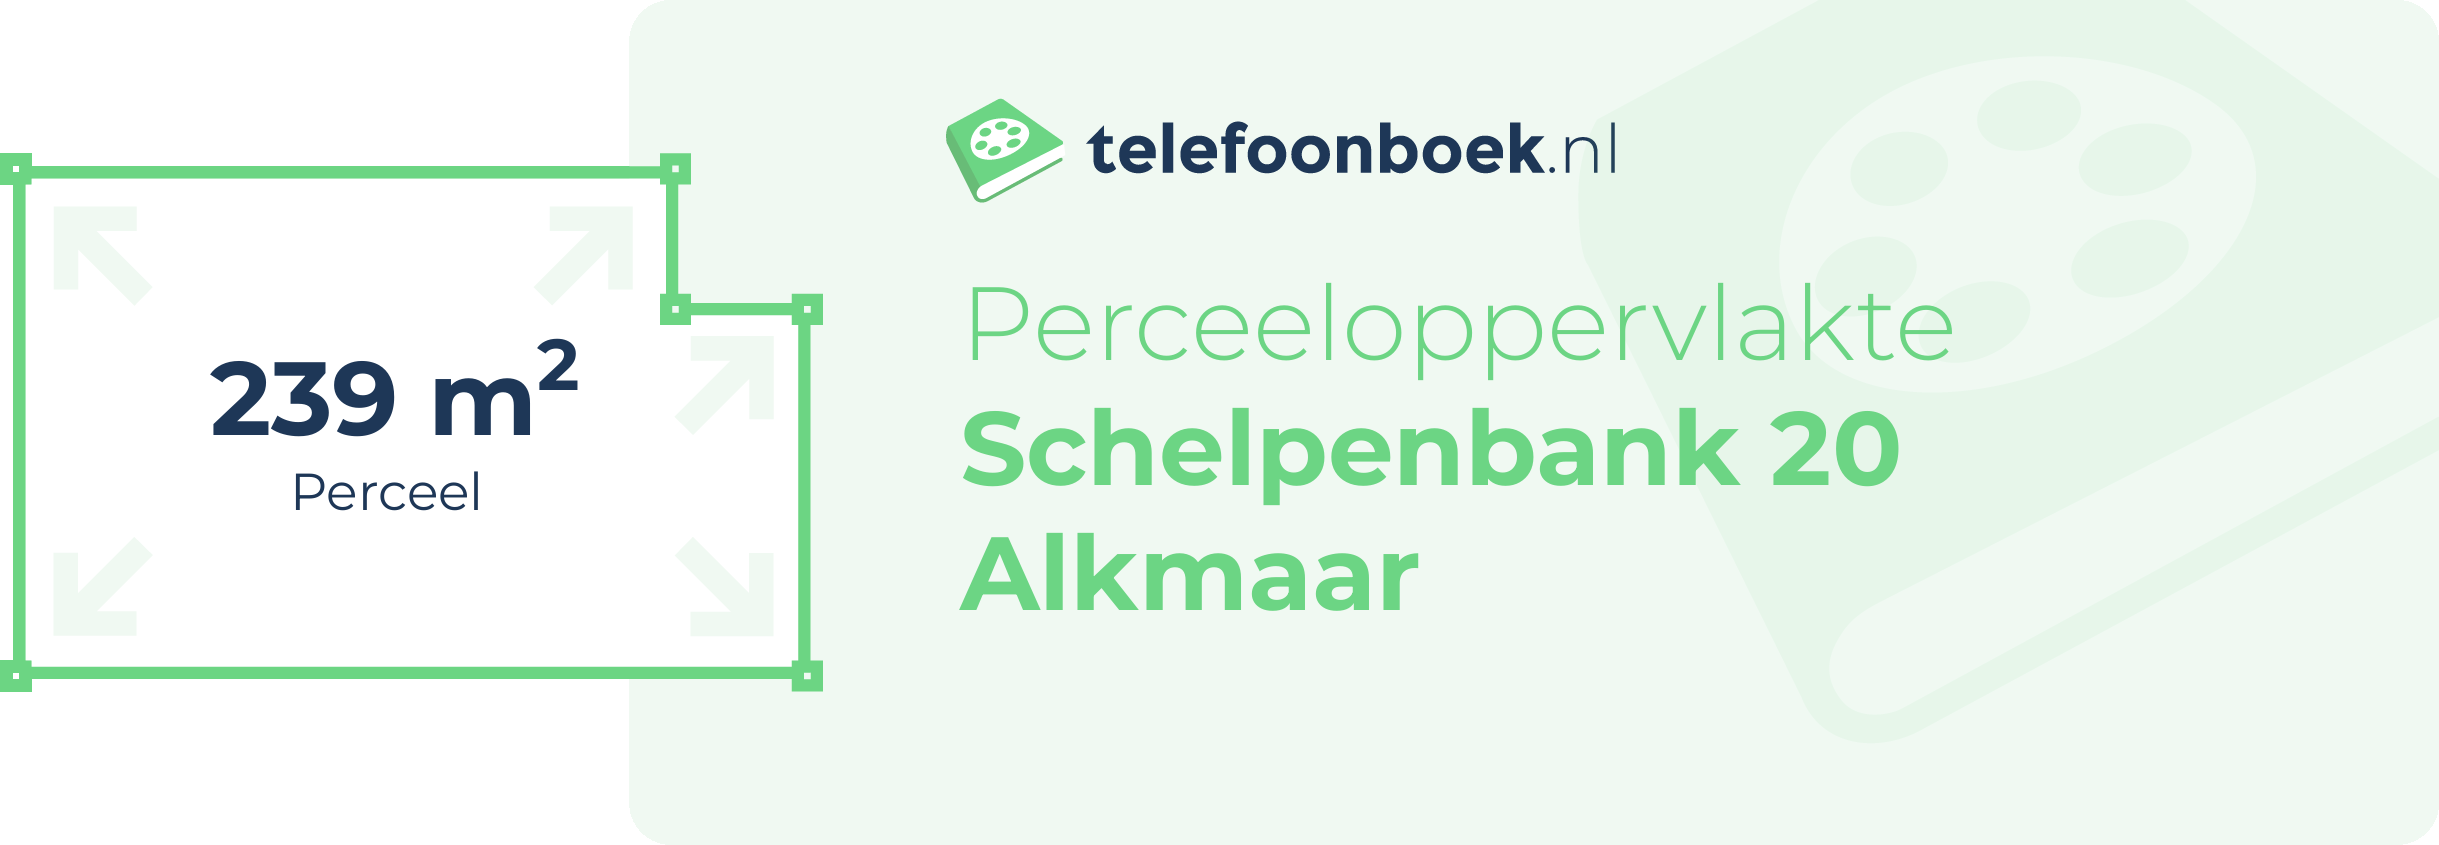 Perceeloppervlakte Schelpenbank 20 Alkmaar